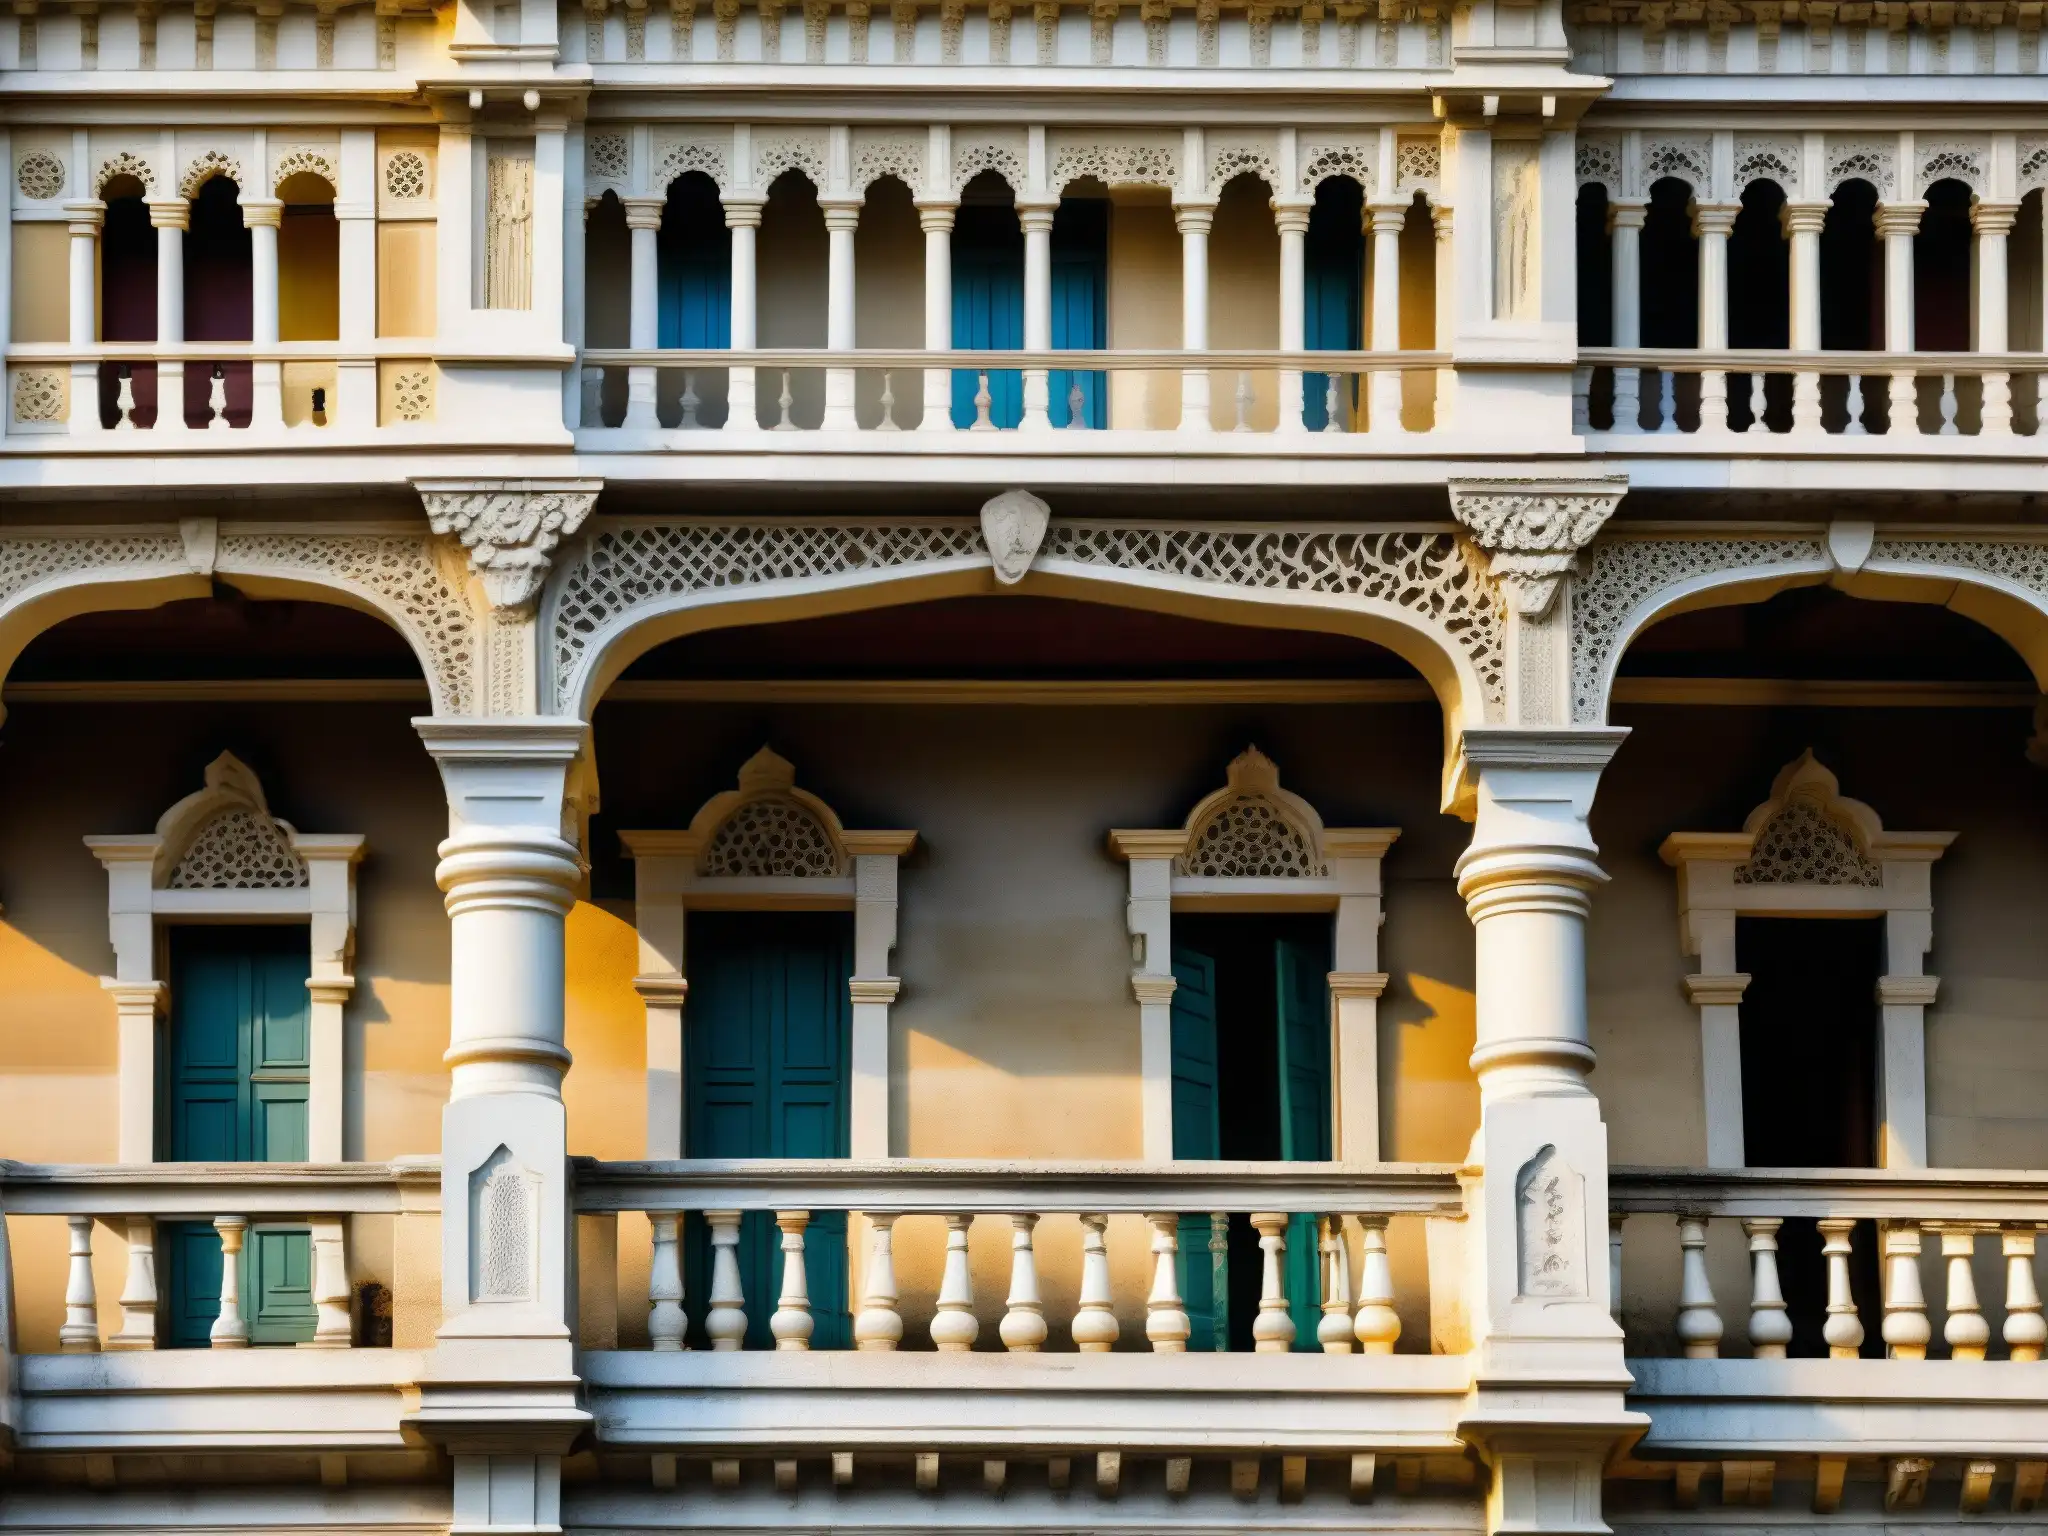 Detalle arquitectónico en la Torre de la Victoria de Kolkata, mostrando la fachada envejecida y los grabados ornamentales